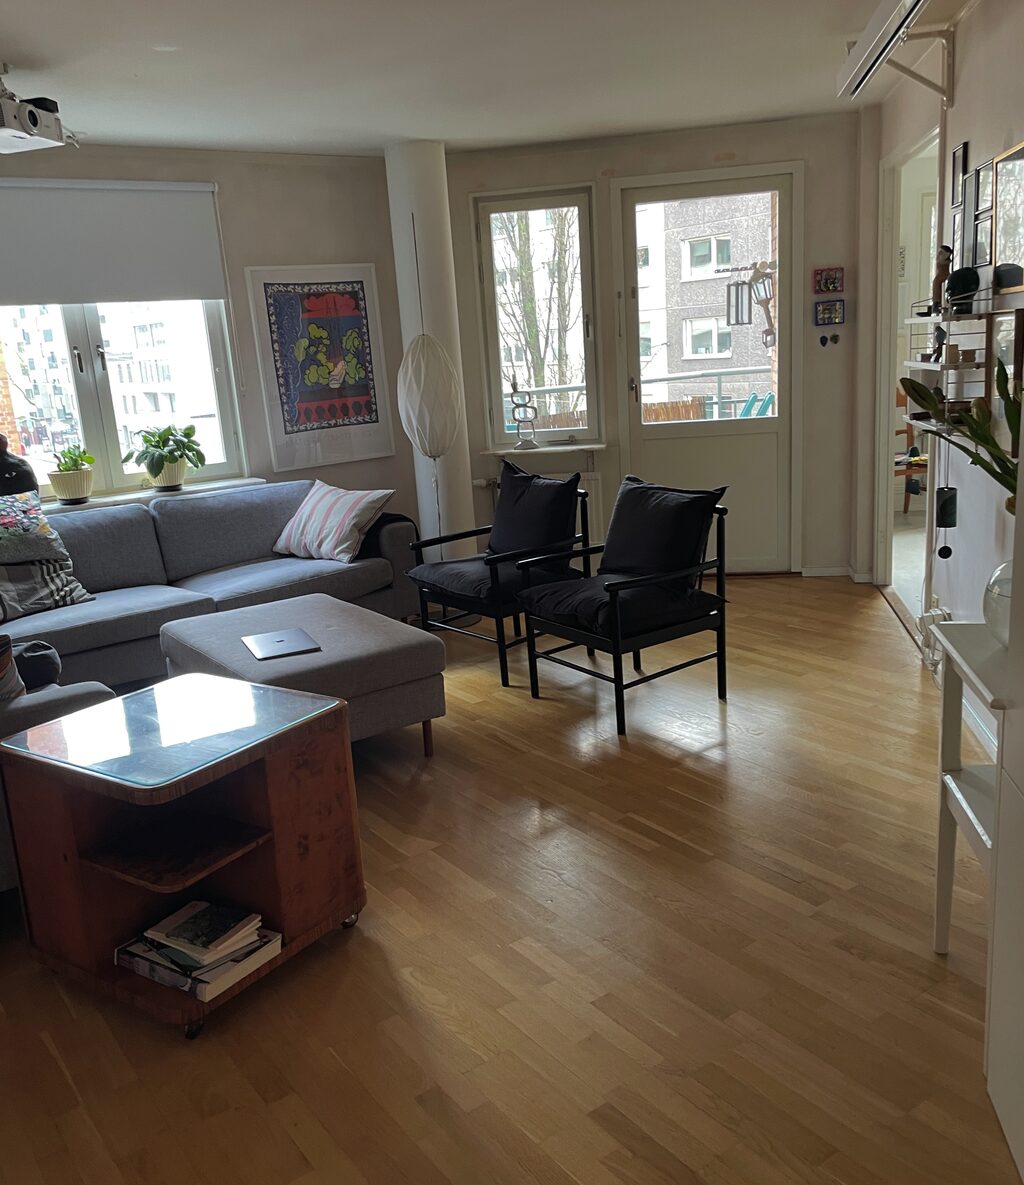 Lägenhetsbyte - Carl Alberts gränd 1, 118 27 Stockholm